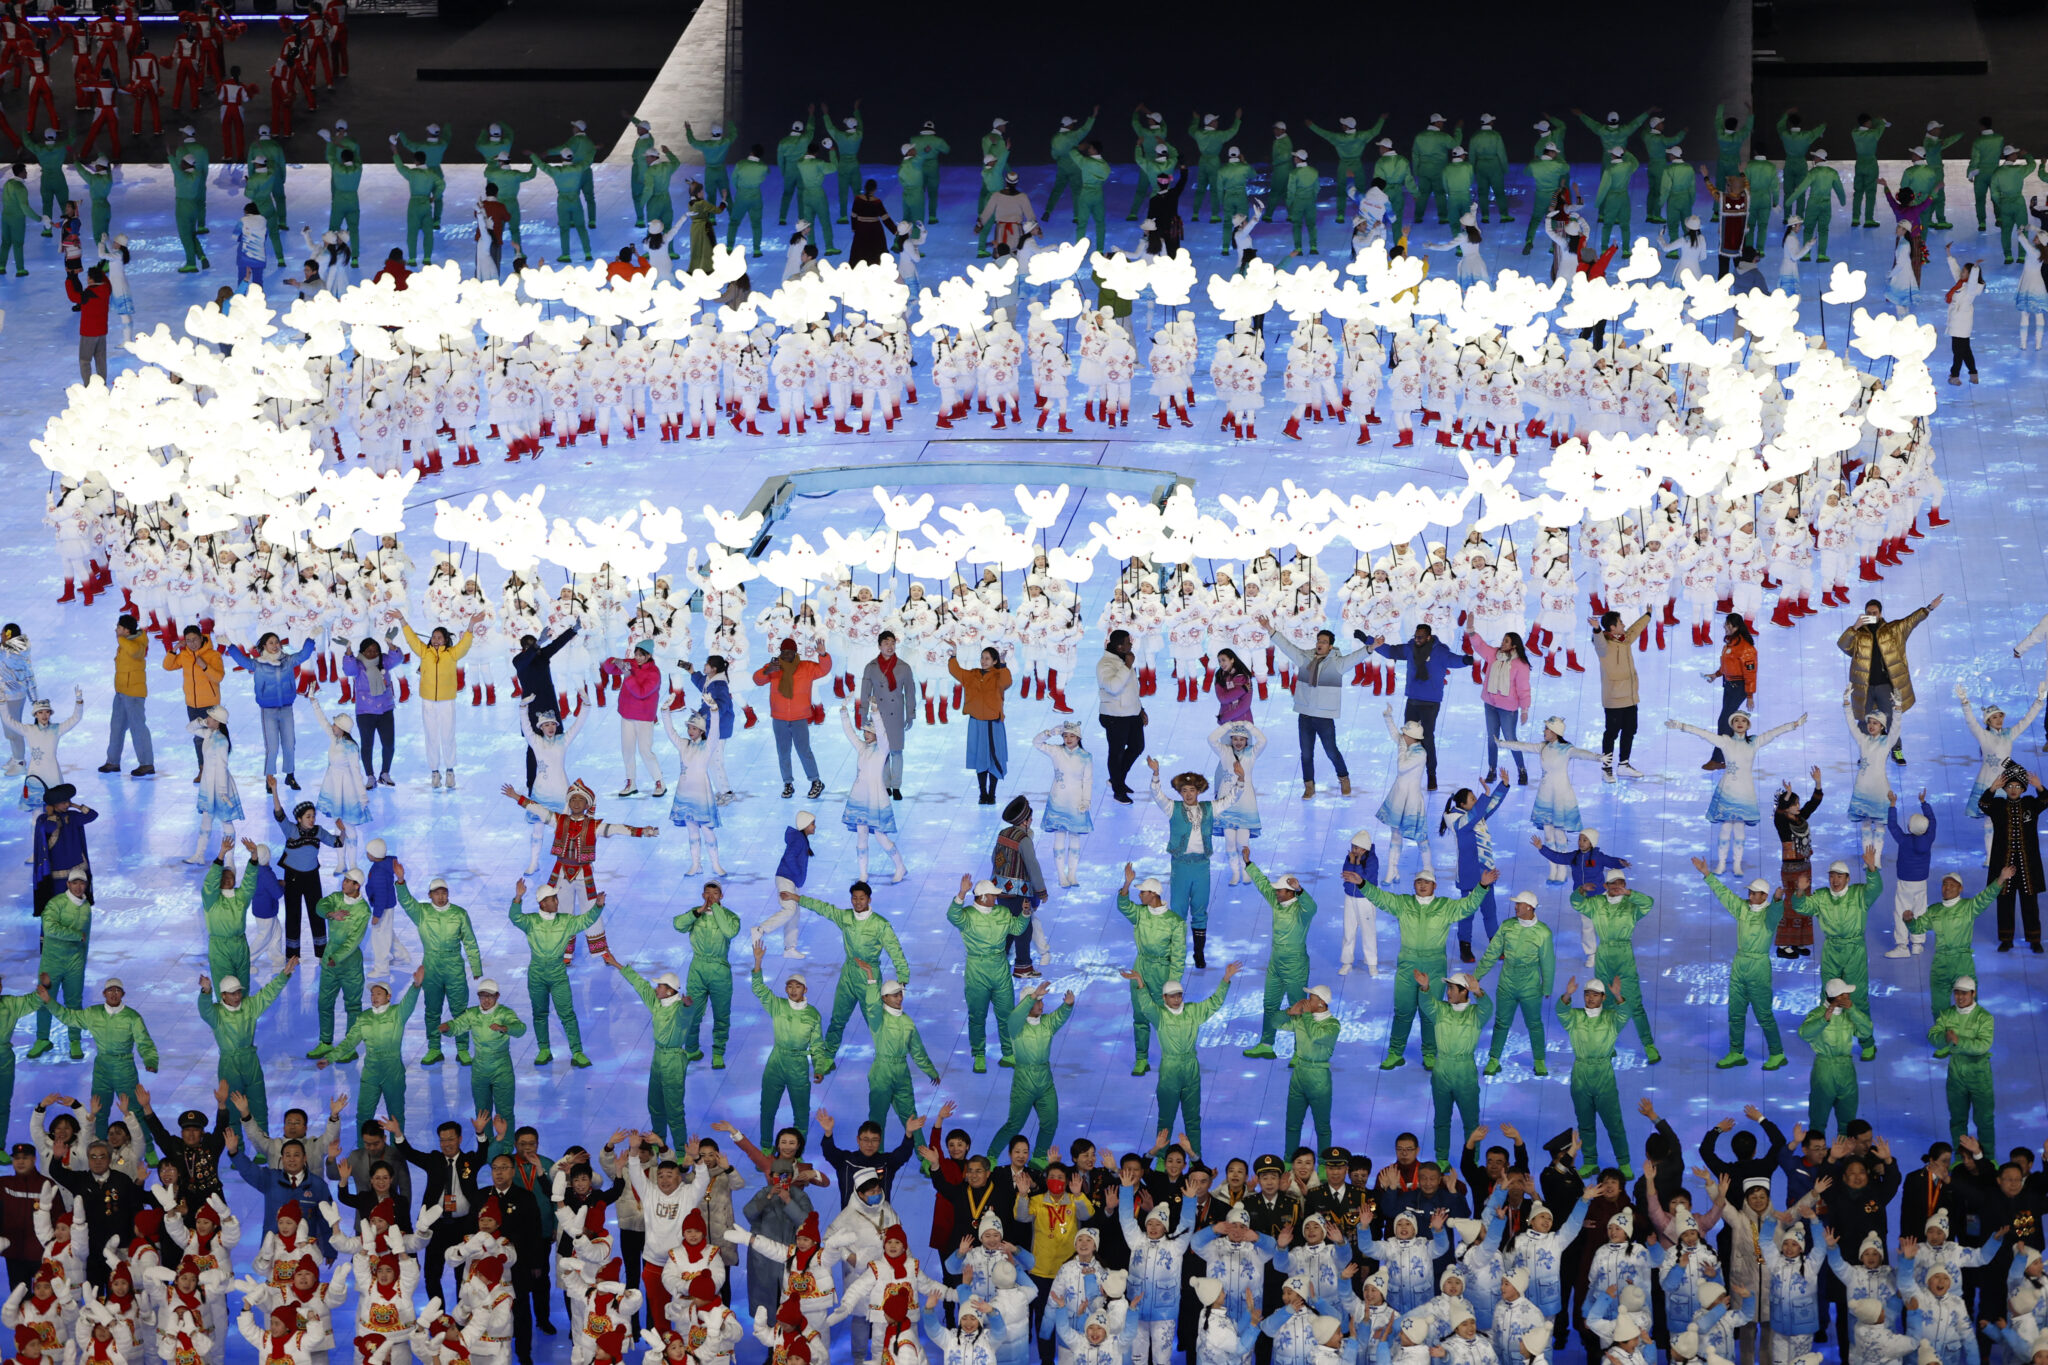 Олимпийские игры 2022 года в Пекине. Церемония открытия, национальный стадион, Пекин, Китай - 4 февраля 2022 года. Артисты во время церемонии открытия.
Фото David W Cerny/REUTERS/Scanpix/LETA